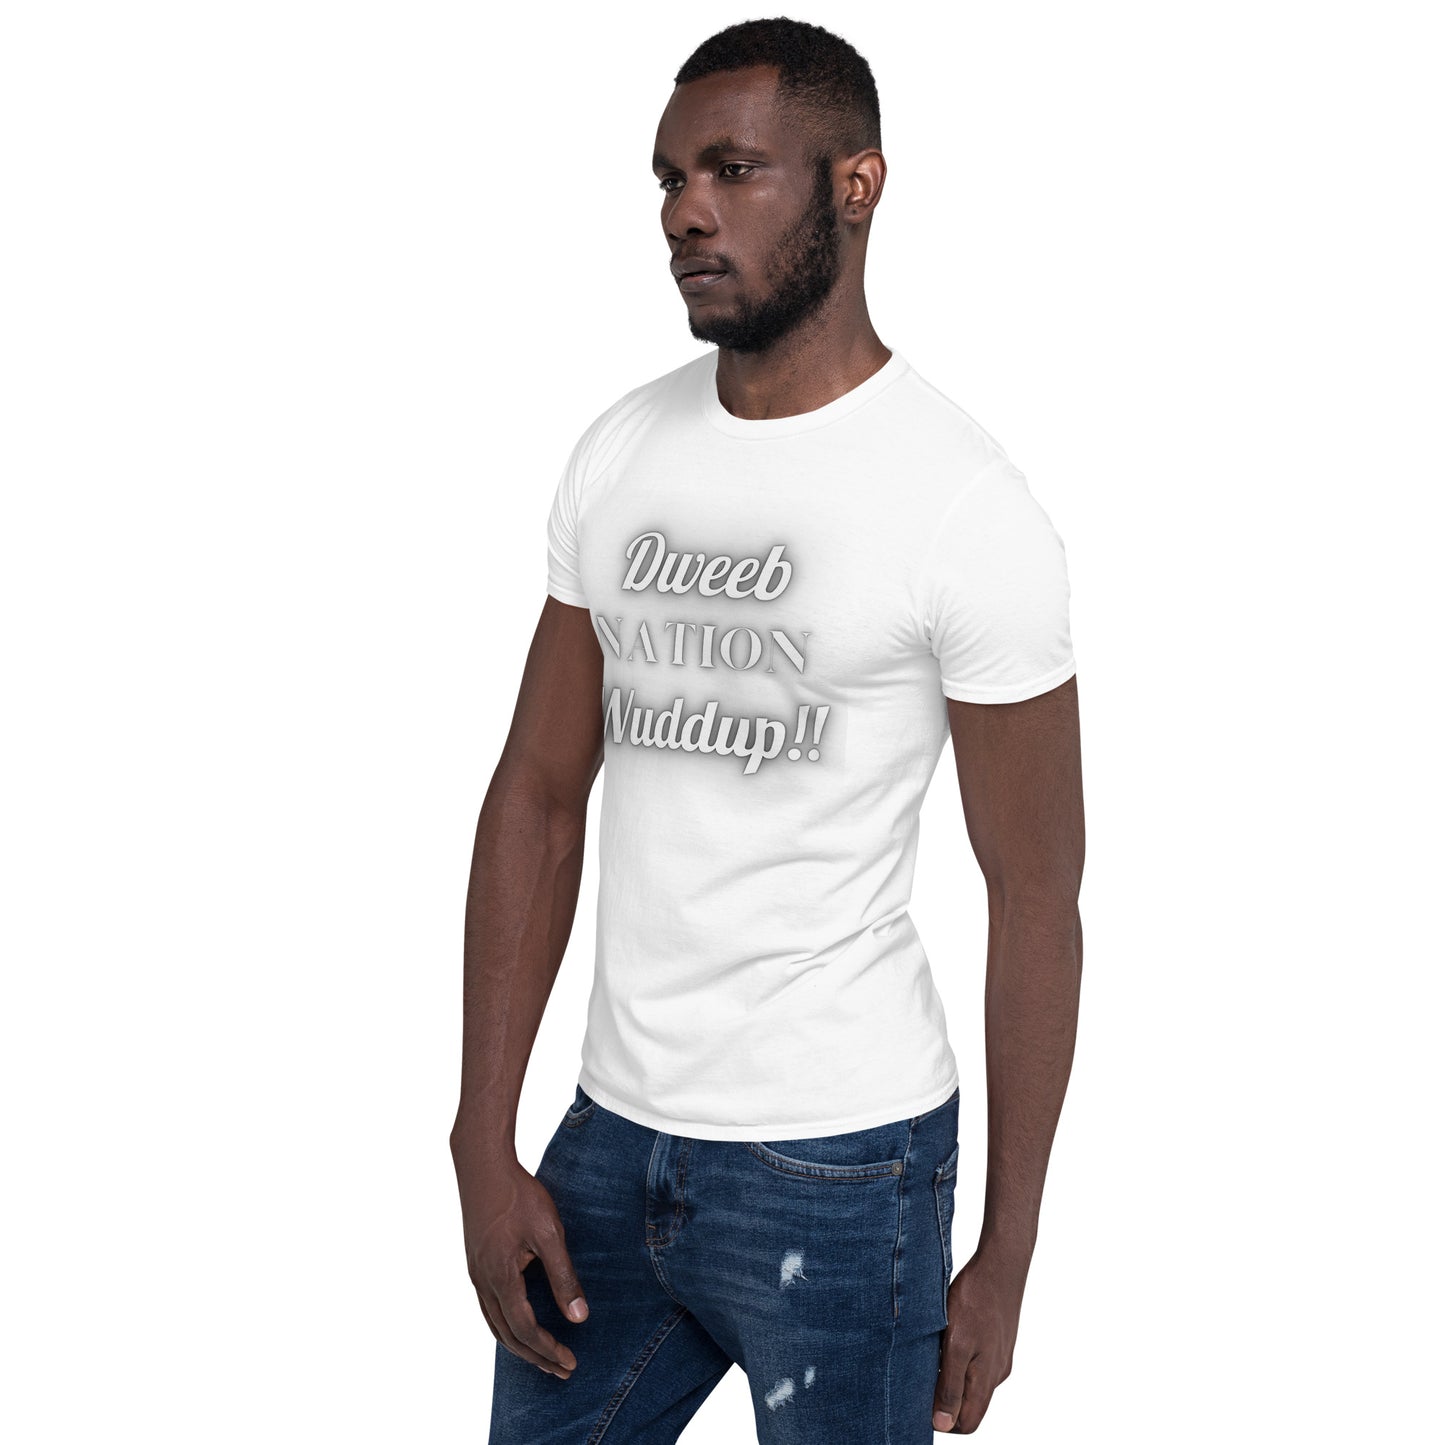 Dweeb Nation Wuddup T-Shirt - Adults